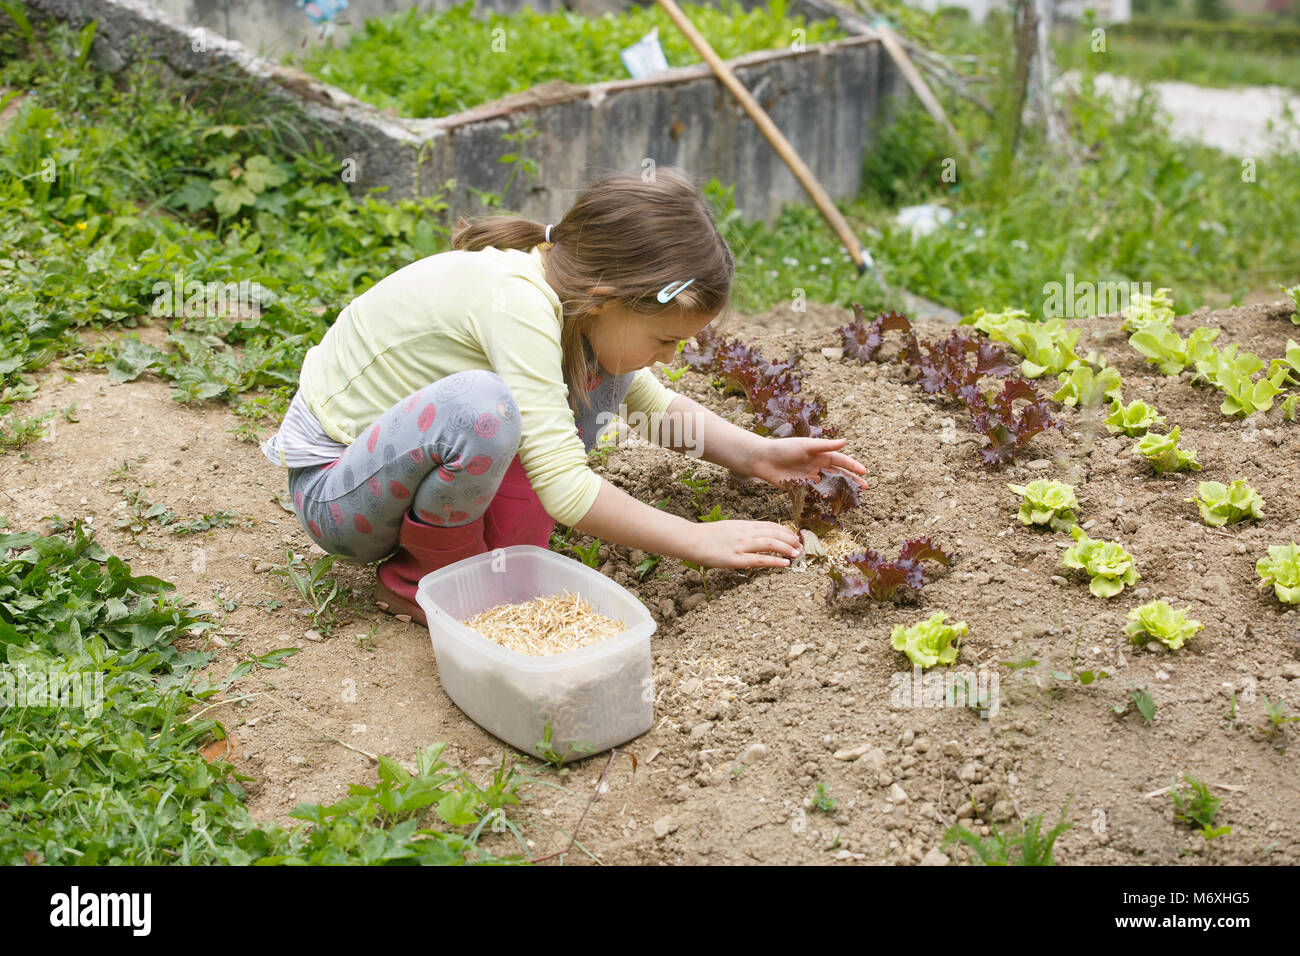 Kleines Mädchen das Einpflanzen von jungen Salat Sämlinge im Frühjahr, Hilfe bei der Gartenarbeit. Bildung für Leben, Home fun Konzept. Stockfoto